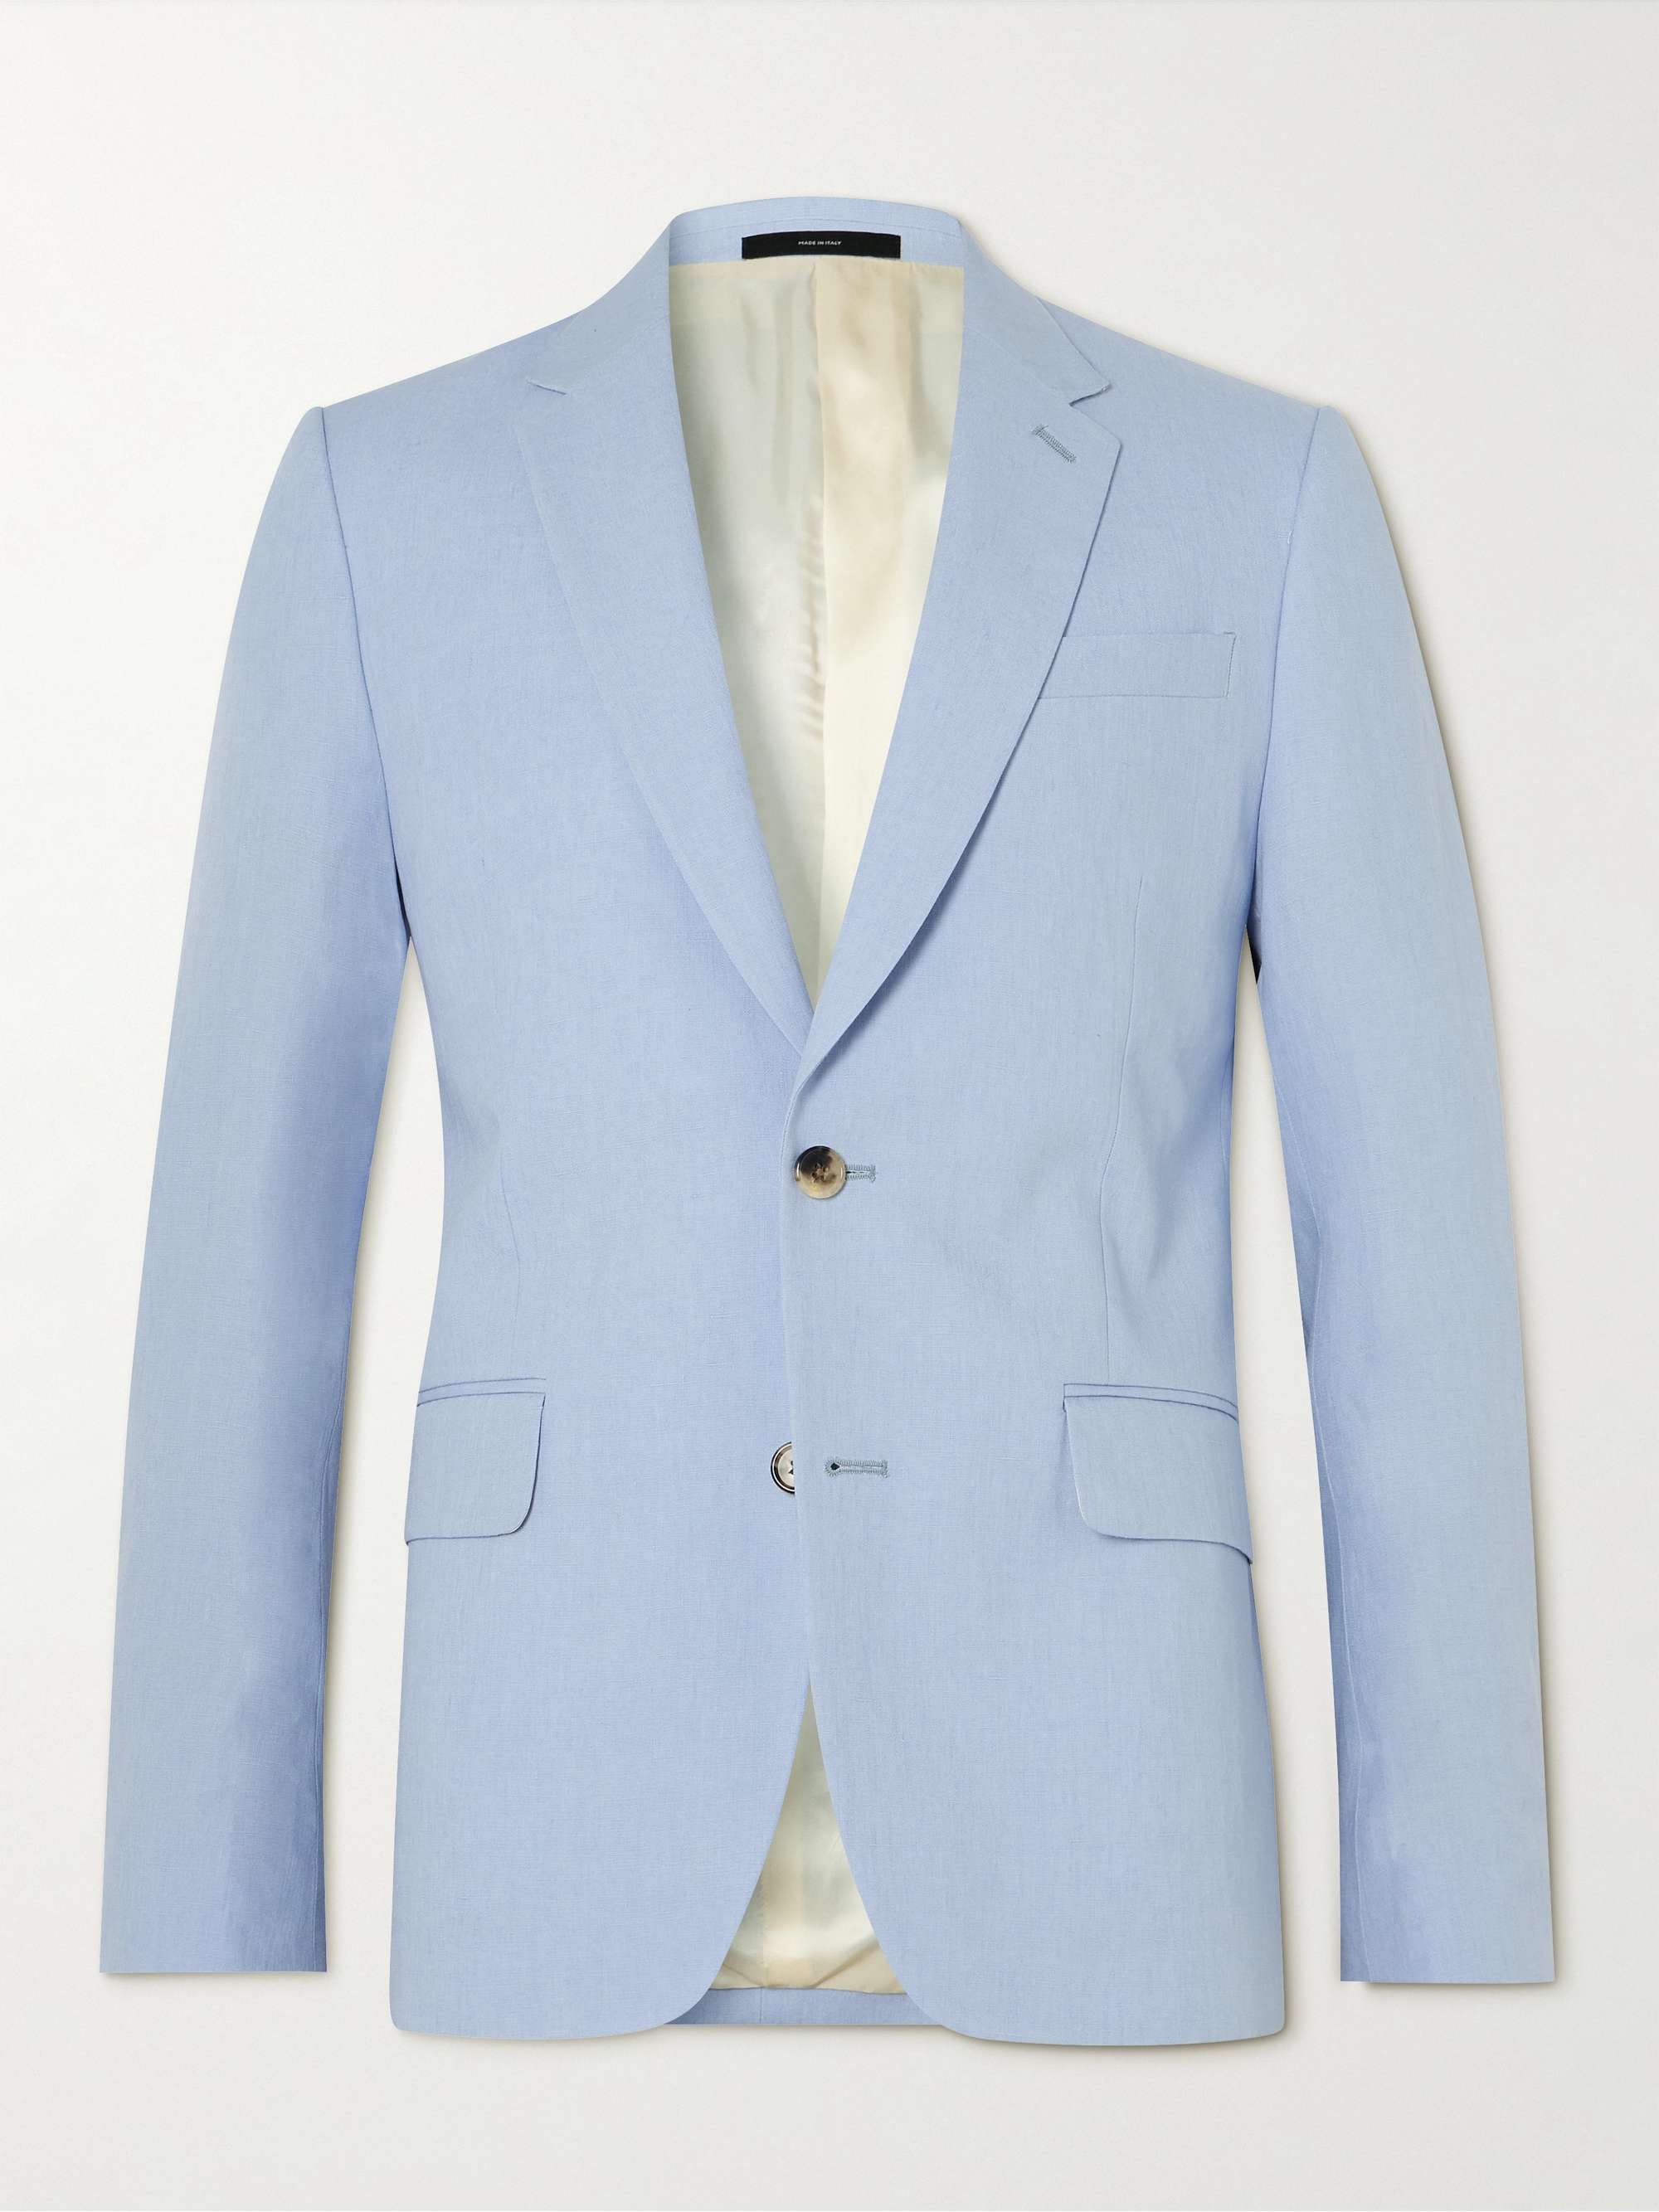 PAUL SMITH Linen Suit Jacket | MR PORTER